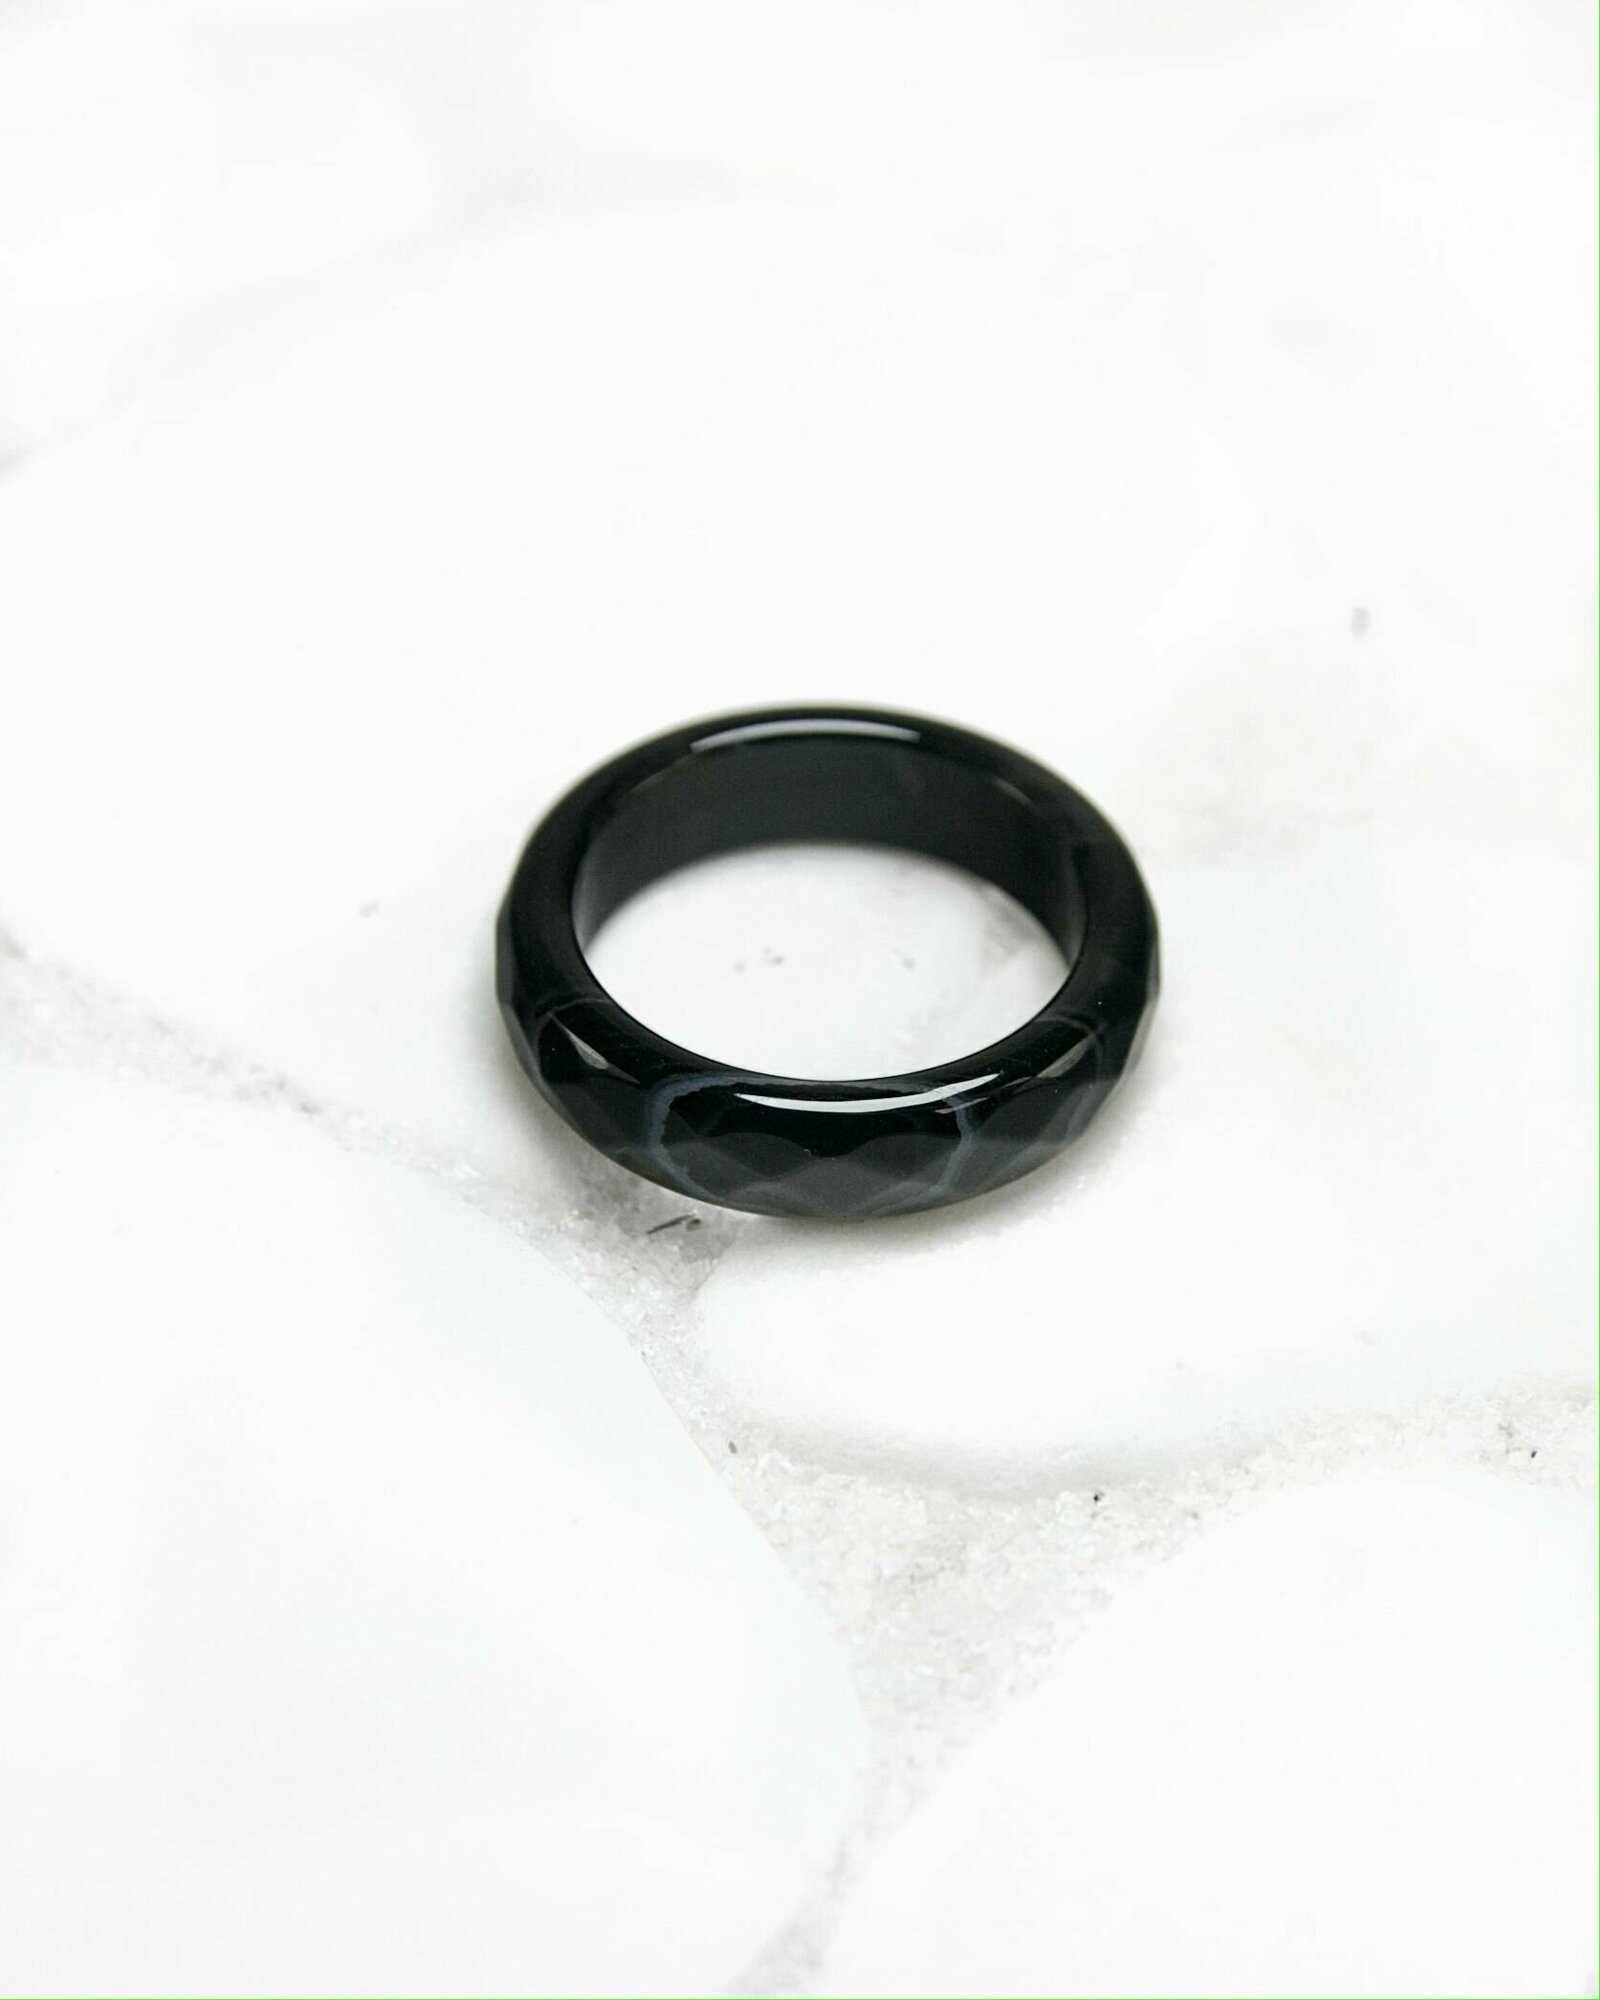 Кольцо-кулон Grow Up Кольцо из натурального камня Черный агат с прожилками, граненое, для душевного равновесия, размер 17-18, агат